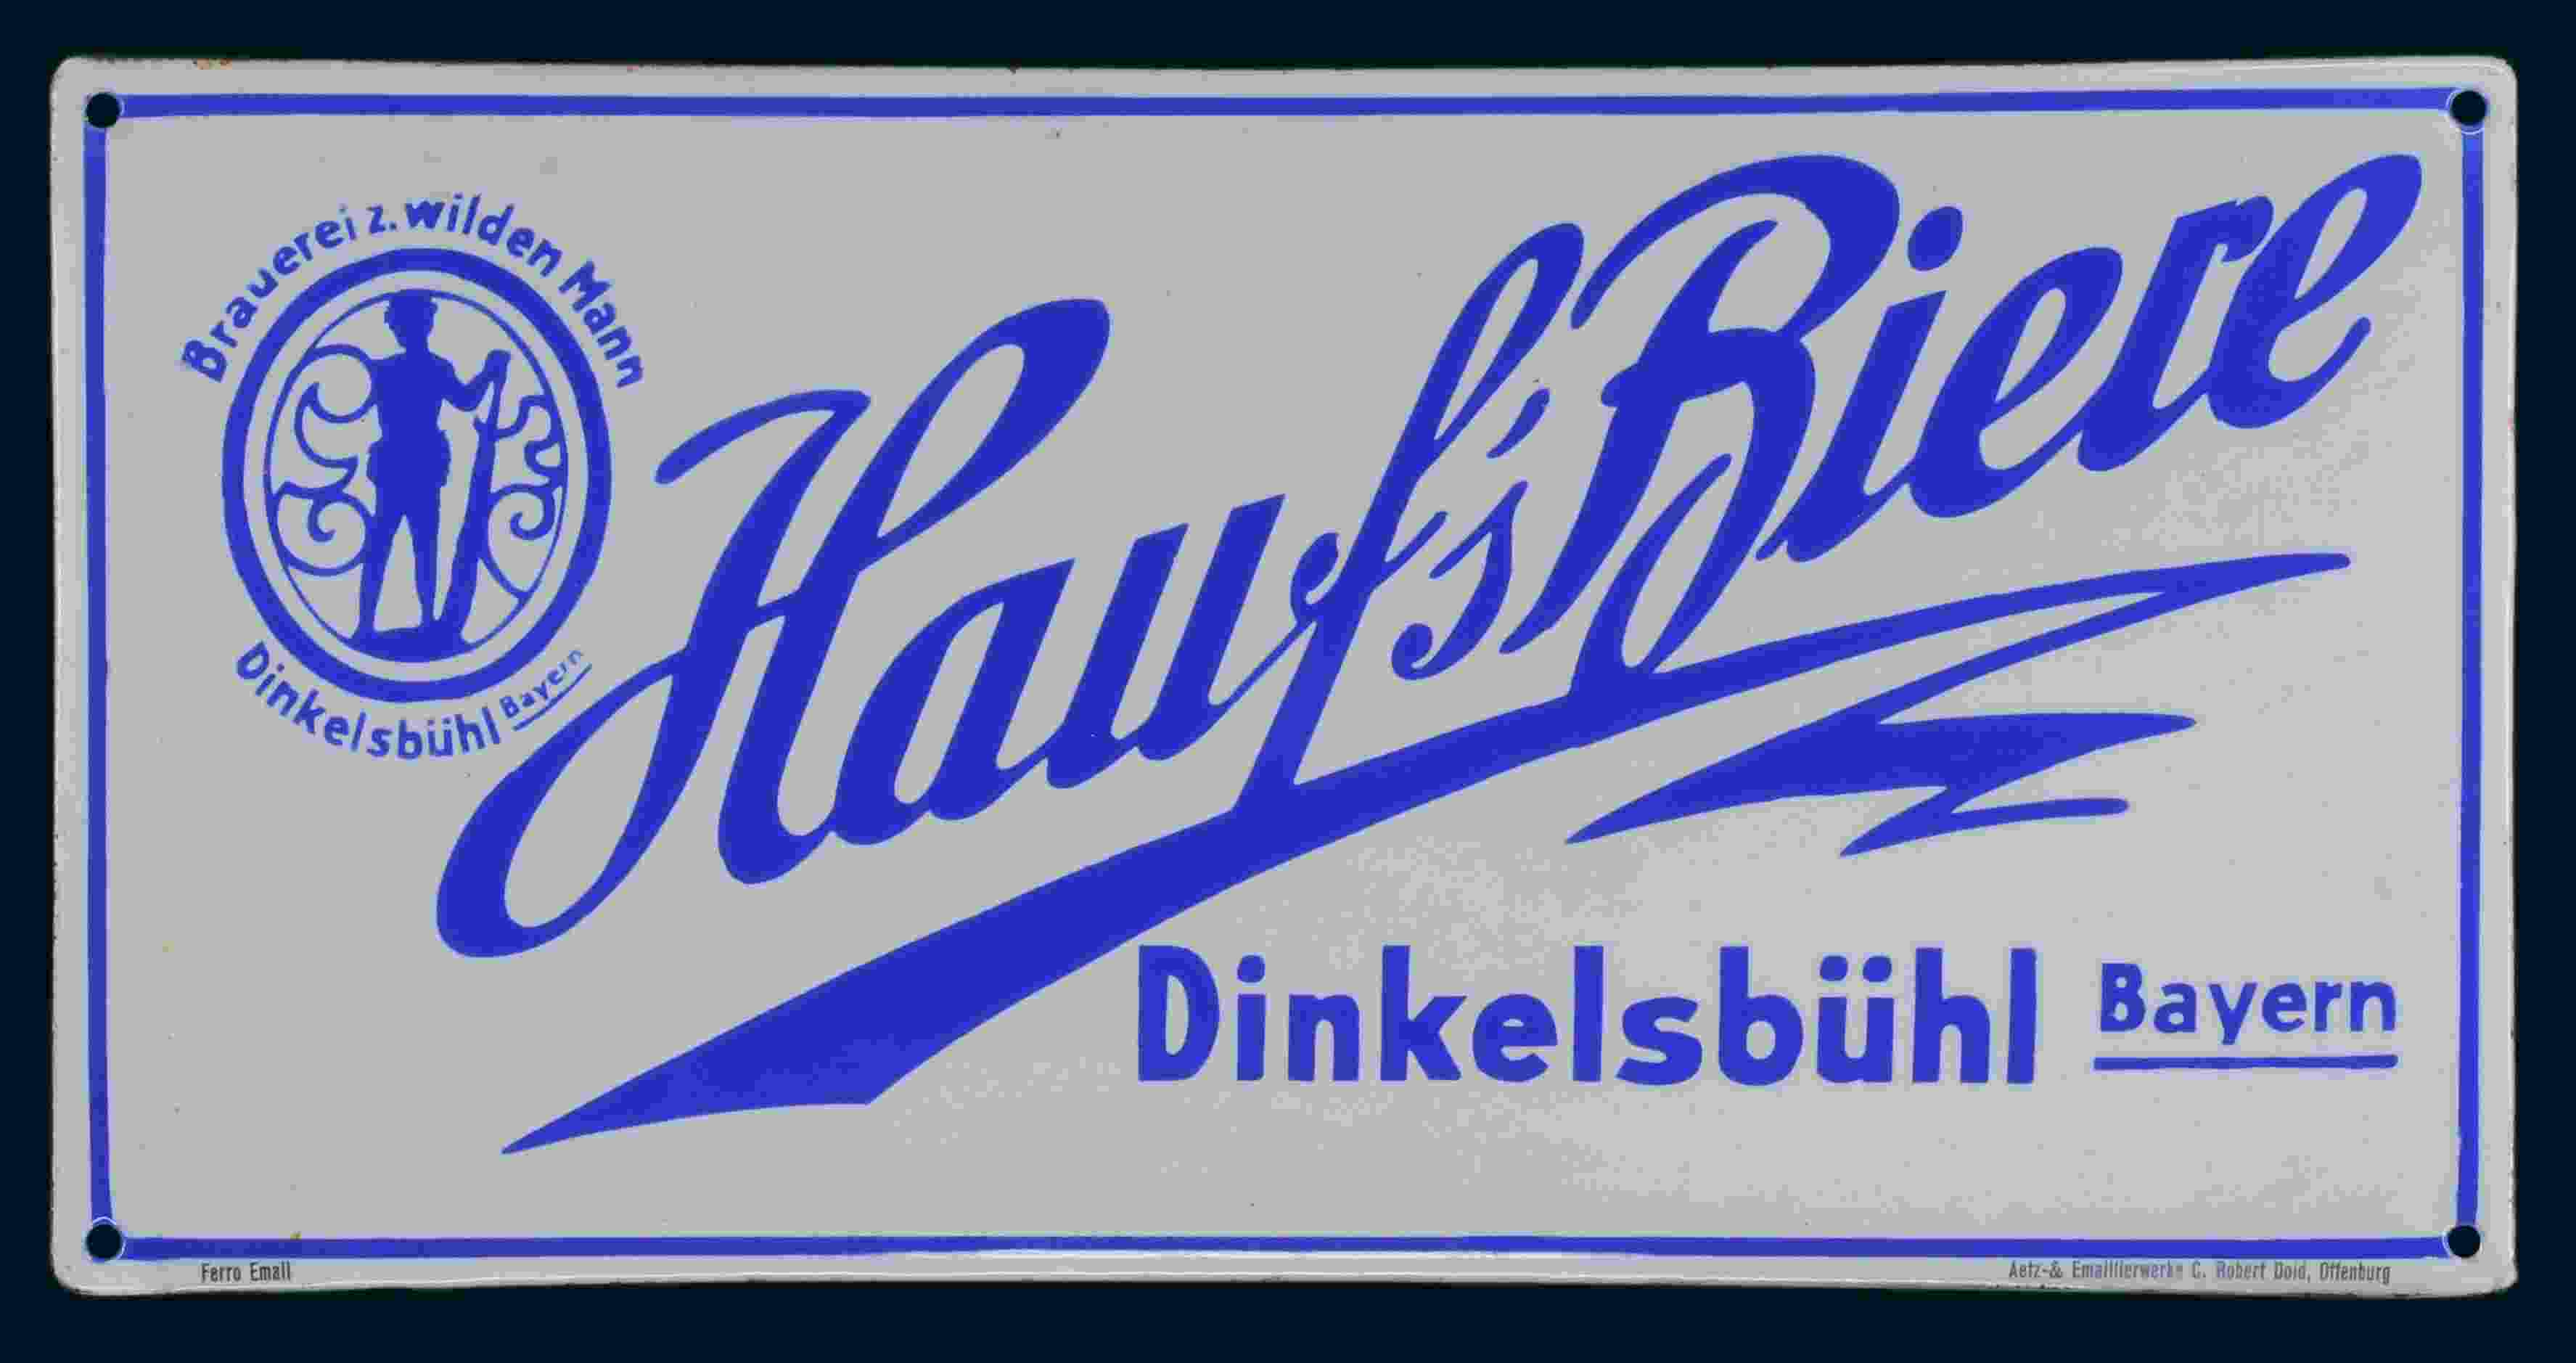 Hauff's Biere Brauerei z. wilden Mann 